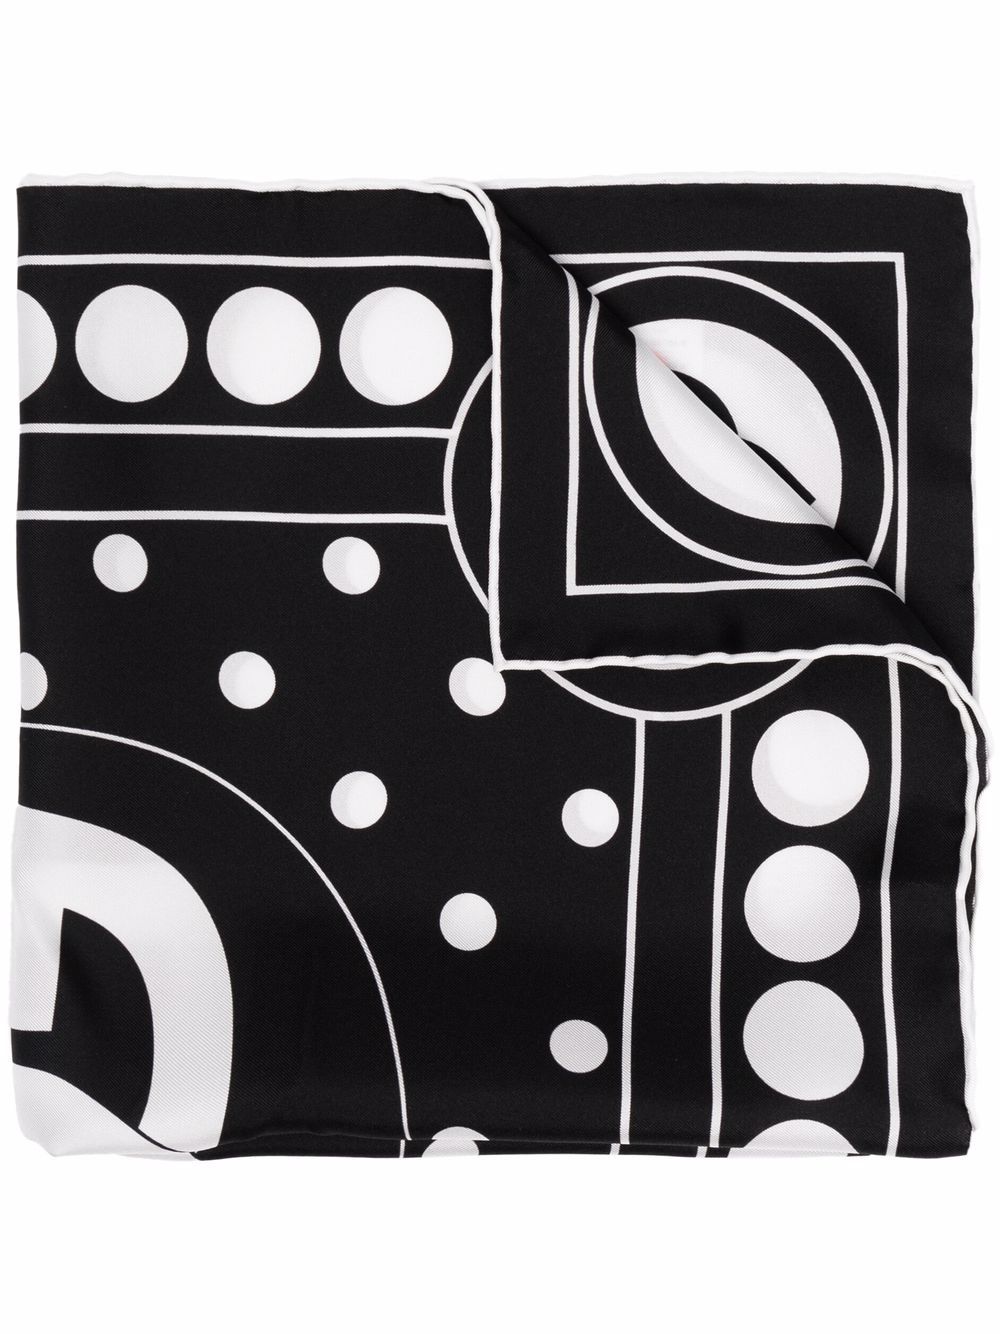 фото Dolce & gabbana шелковый платок с абстрактным принтом